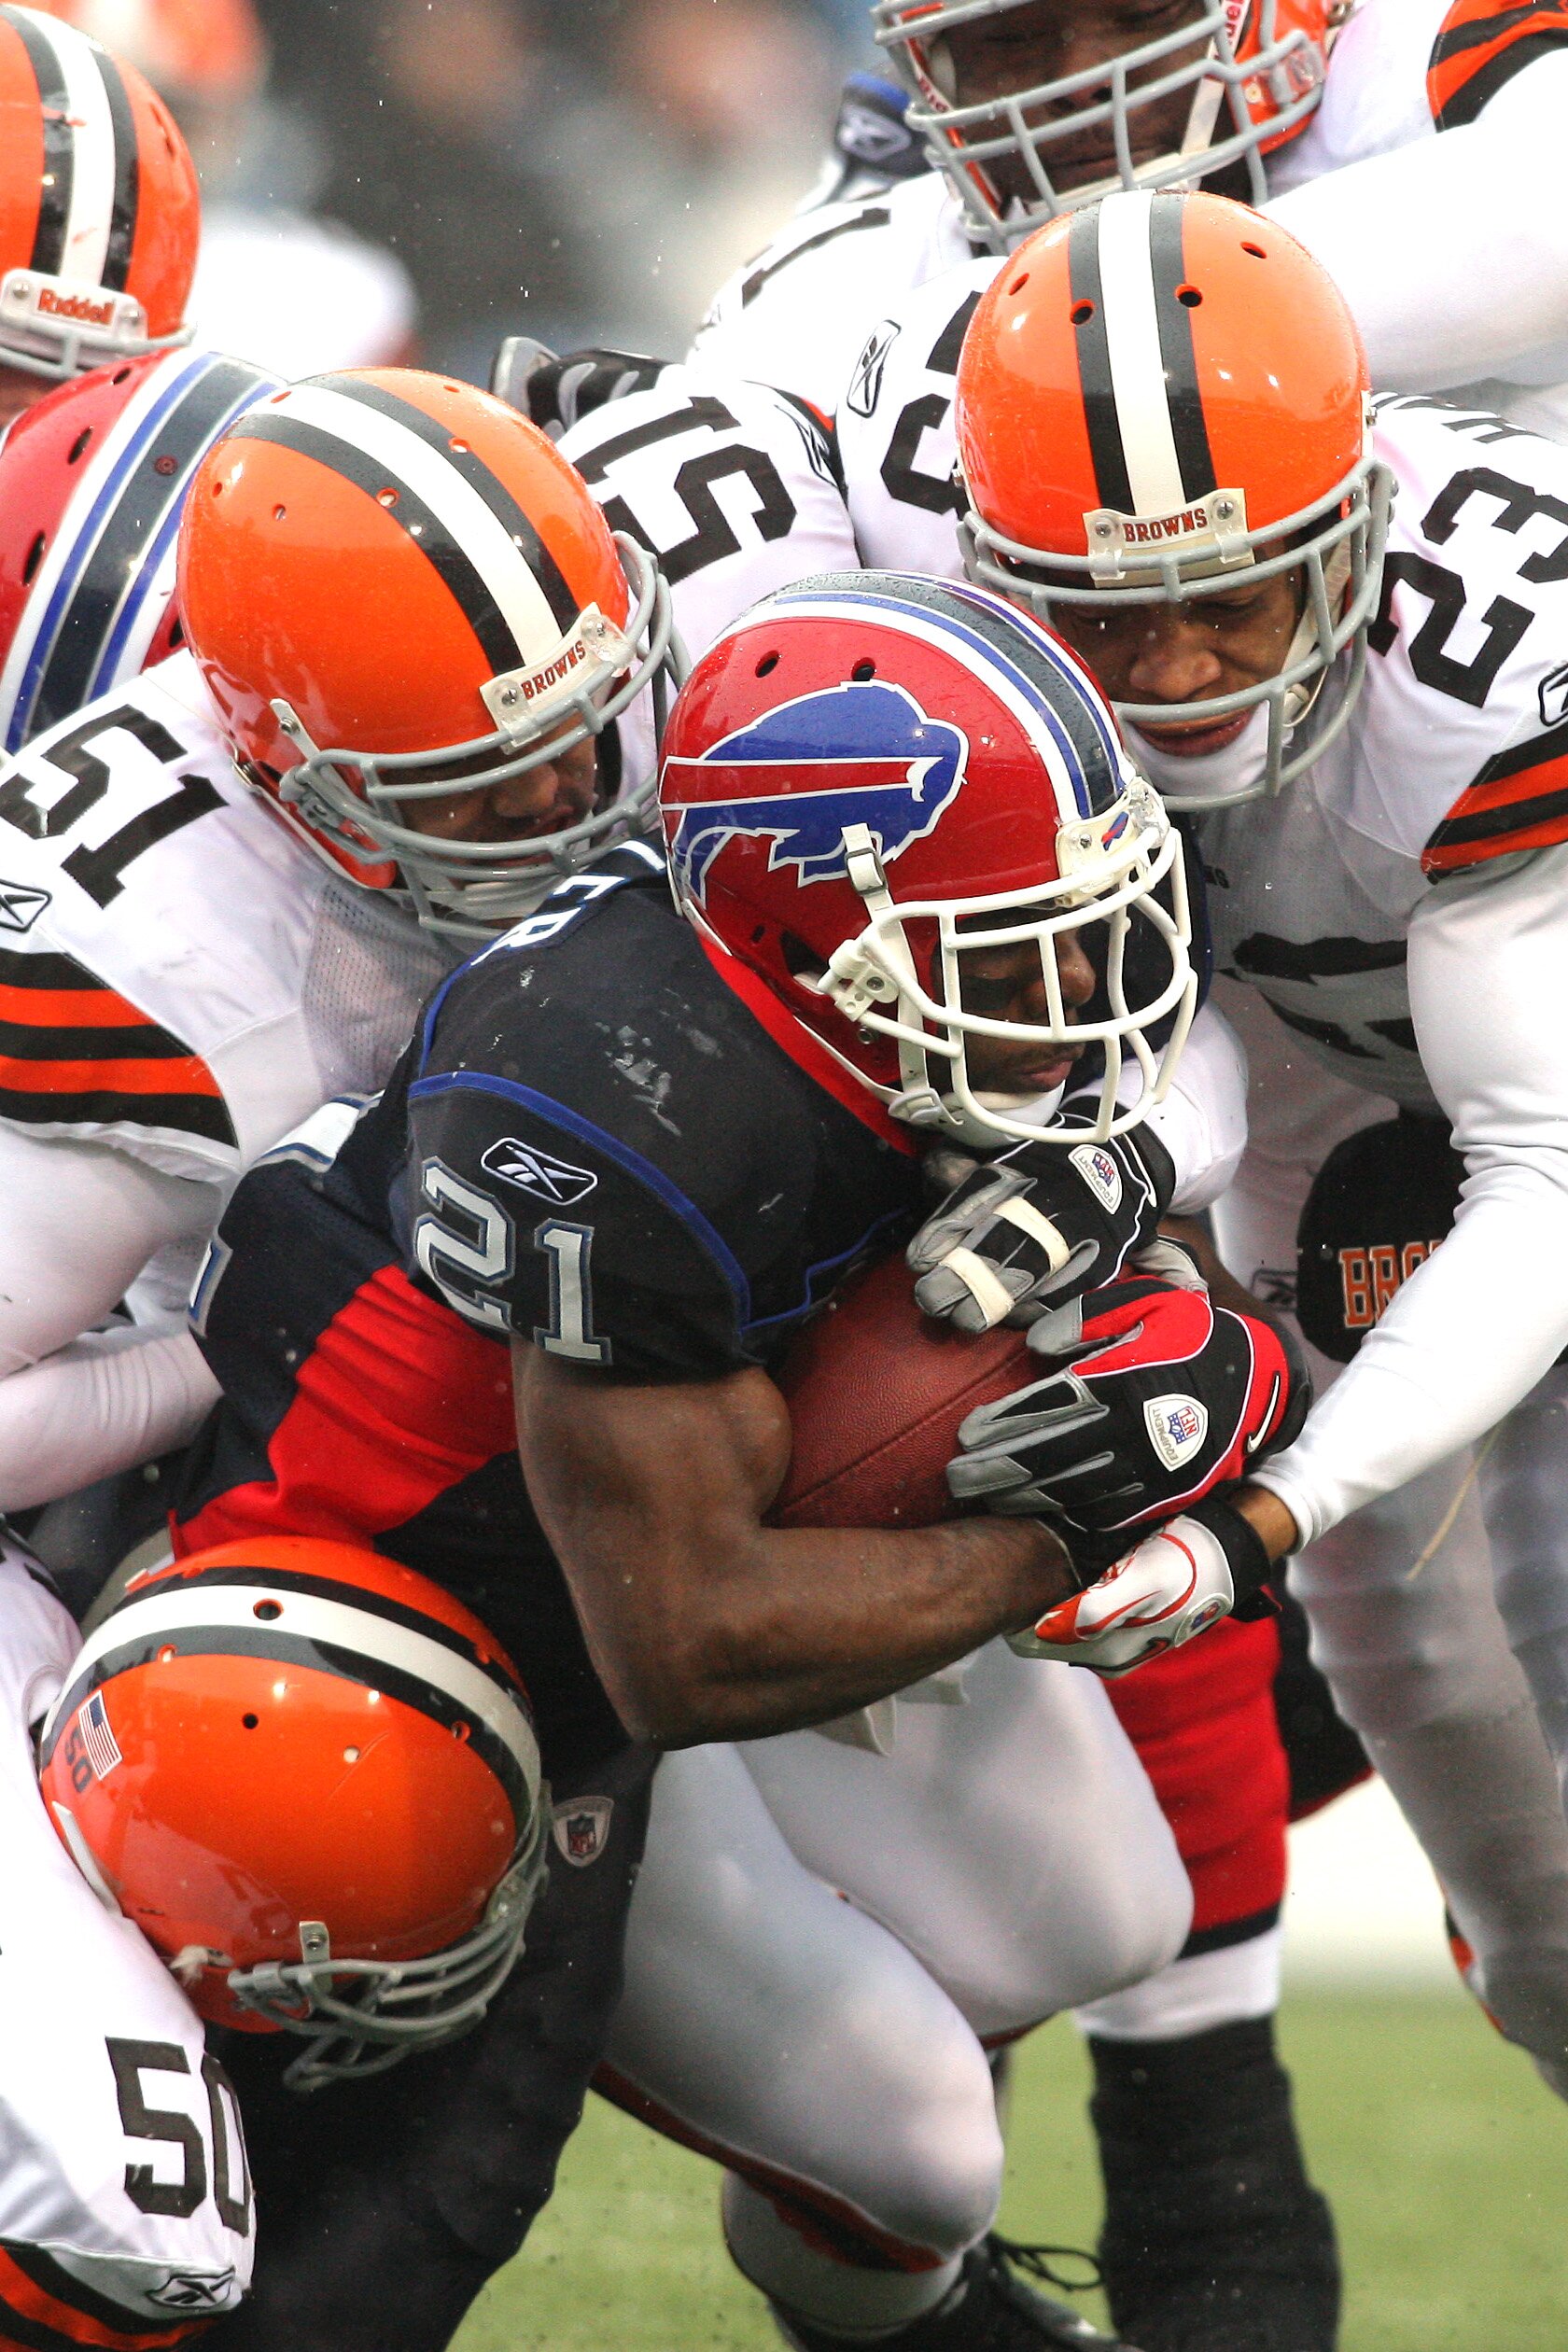 2012 Fantasy Football Sleepers: Buffalo Bills Running Back C.J. Spiller